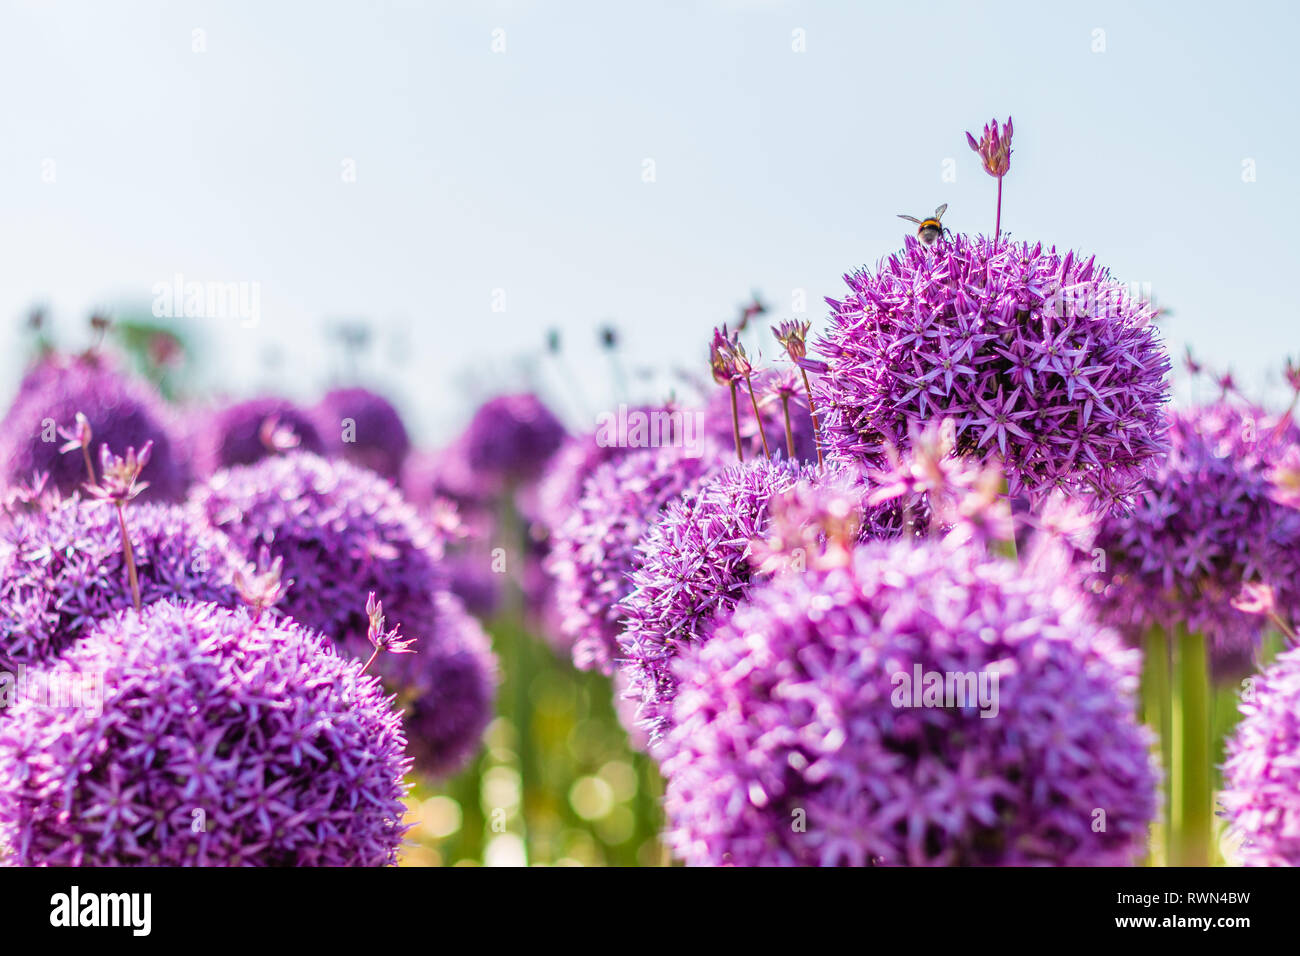 Hummel auf der wunderschönen violetten Stern-beschmutzte Lauch Stockfoto